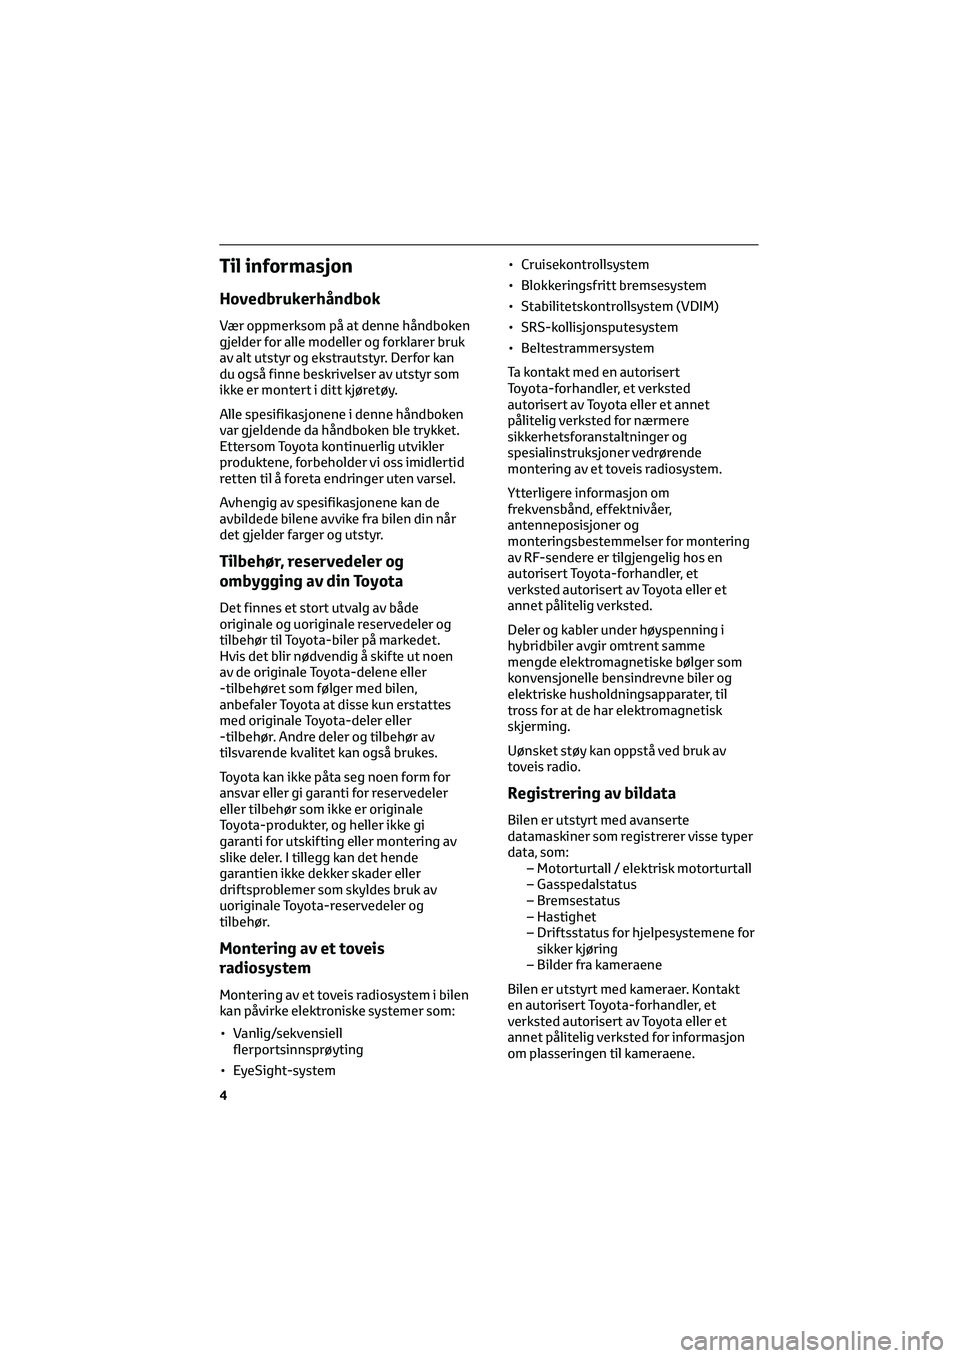 TOYOTA GR86 2022  Instruksjoner for bruk (in Norwegian) Til informasjon
Hovedbrukerhåndbok
Vær oppmerksom på at denne håndboken
gjelder for alle modeller og forklarer bruk
av alt utstyr og ekstrautstyr. Derfor kan
du også finne beskrivelser av utstyr 